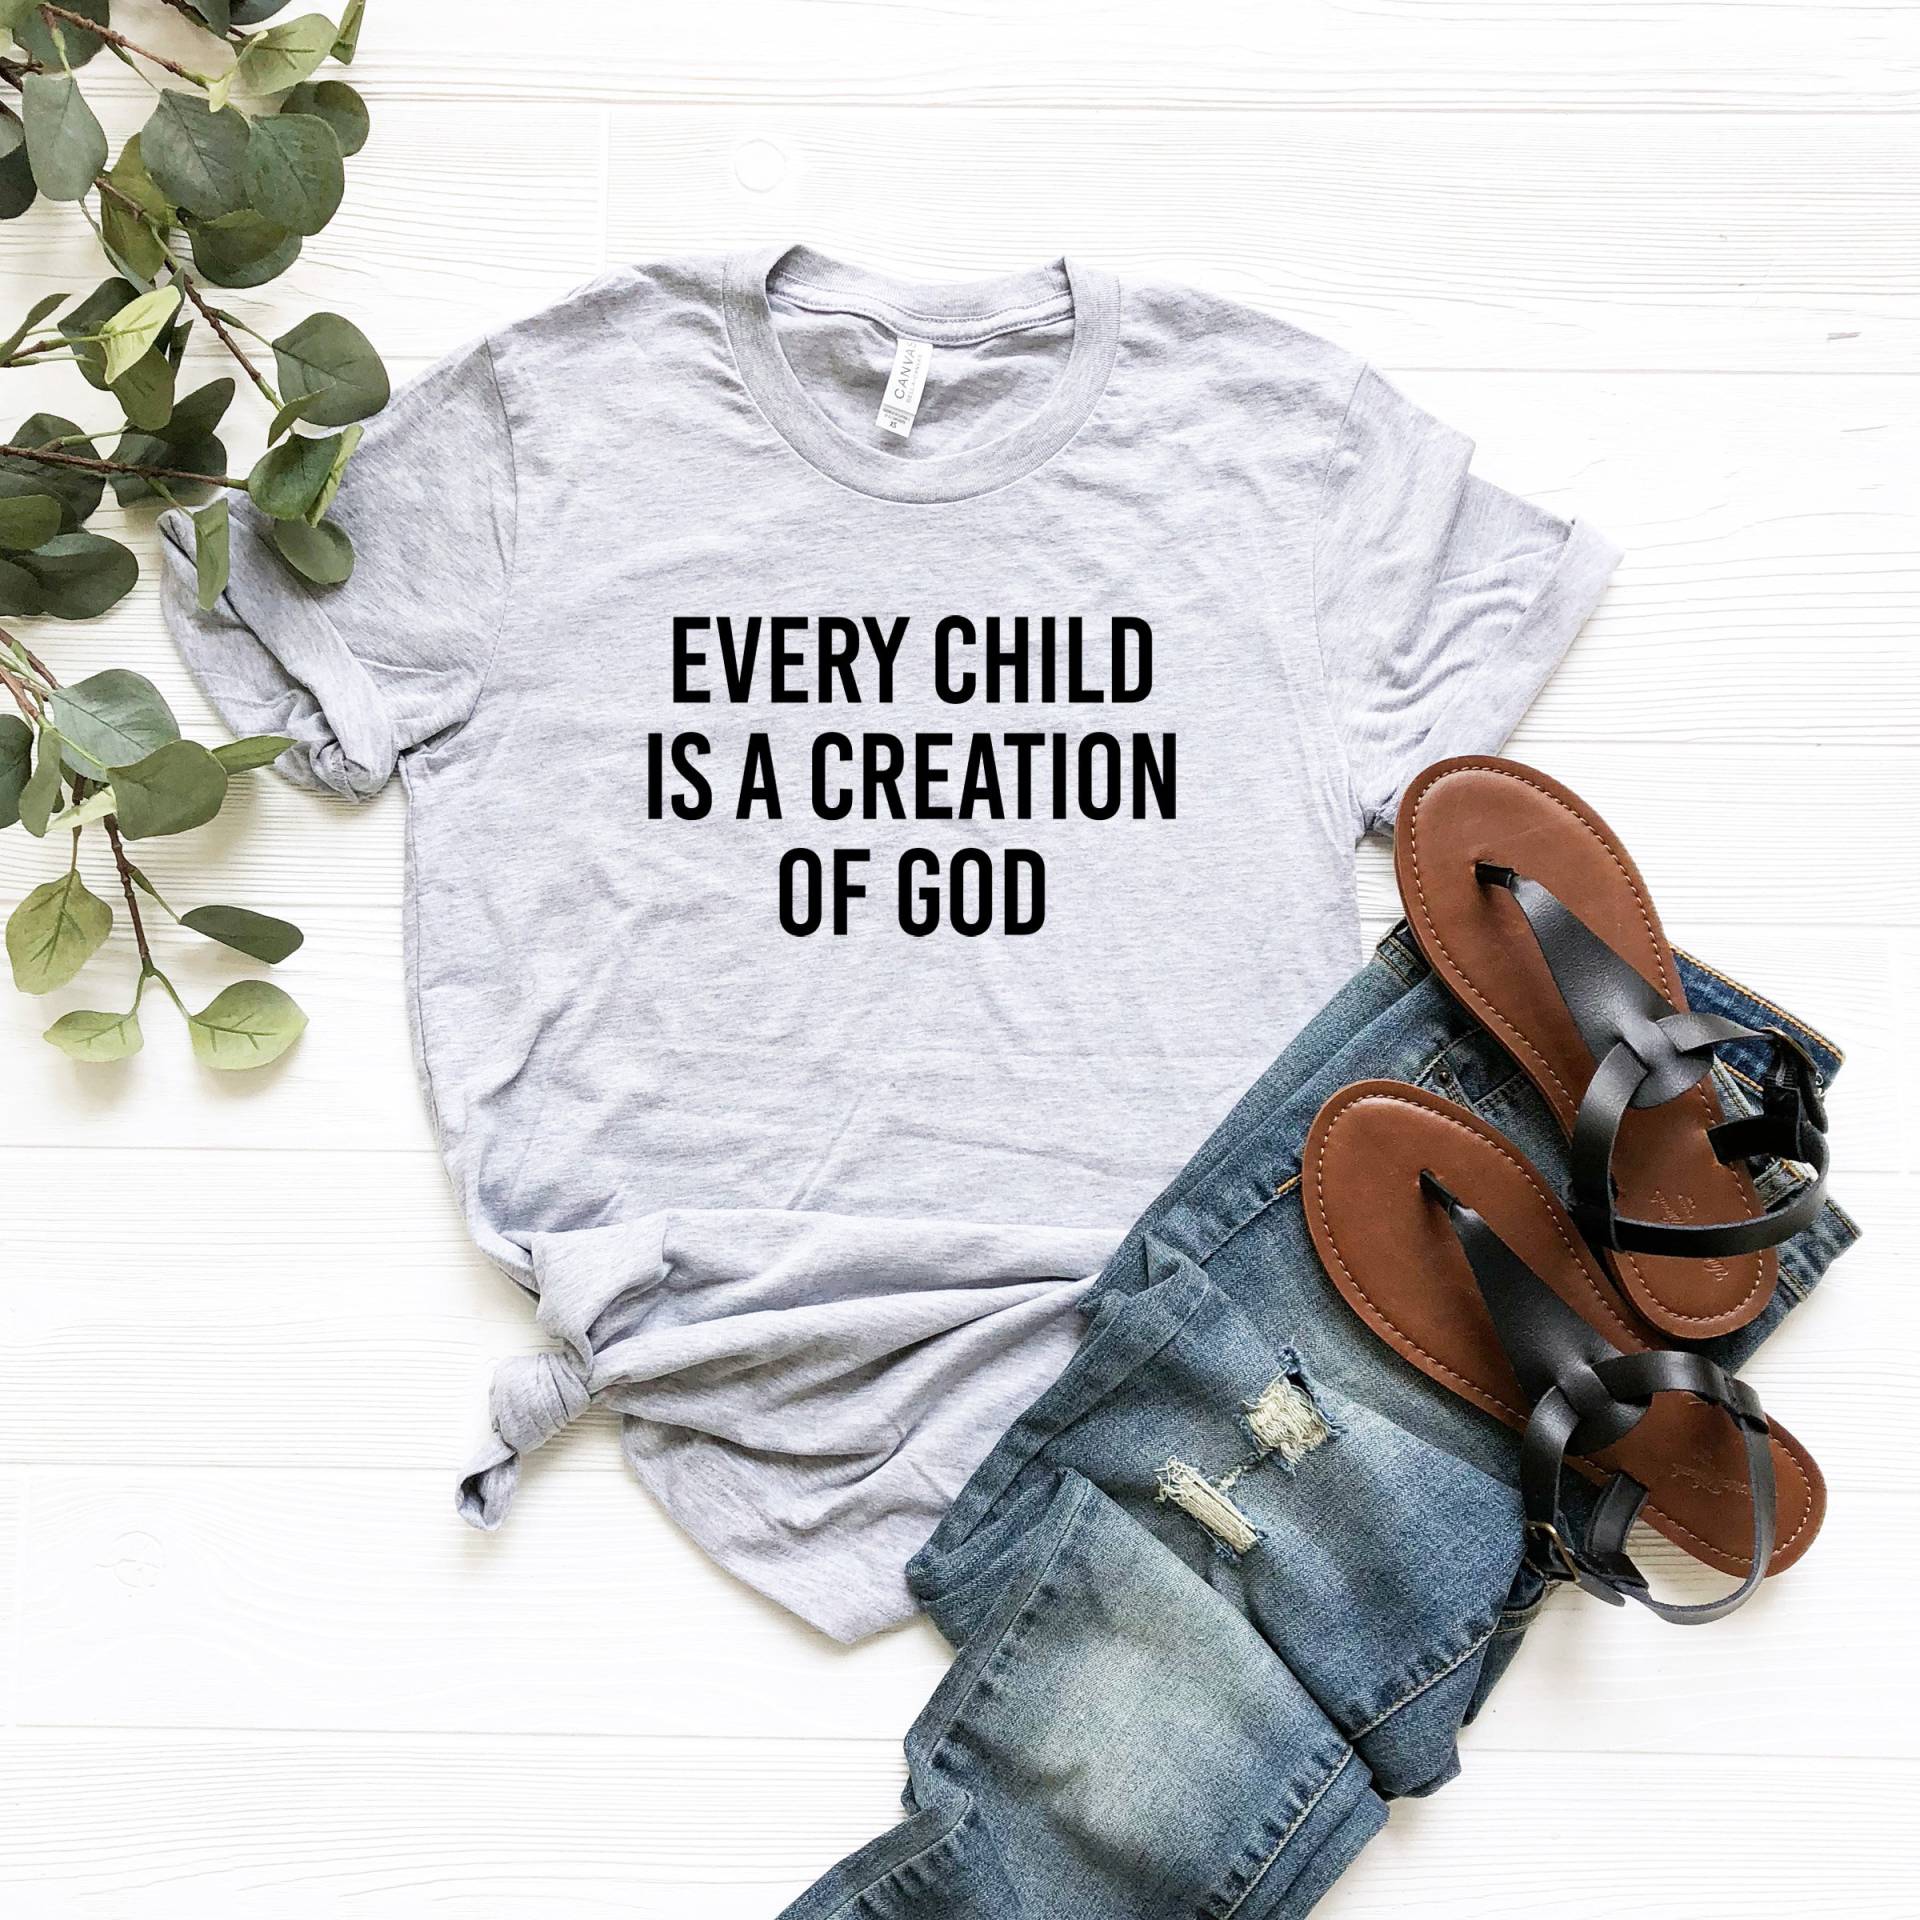 Jedes Kind Ist Eine Schöpfung Gottes Shirt, Pro Life T-Shirt, Christliches Tshirt, Wähle Das Leben von LavenderBluesMarket